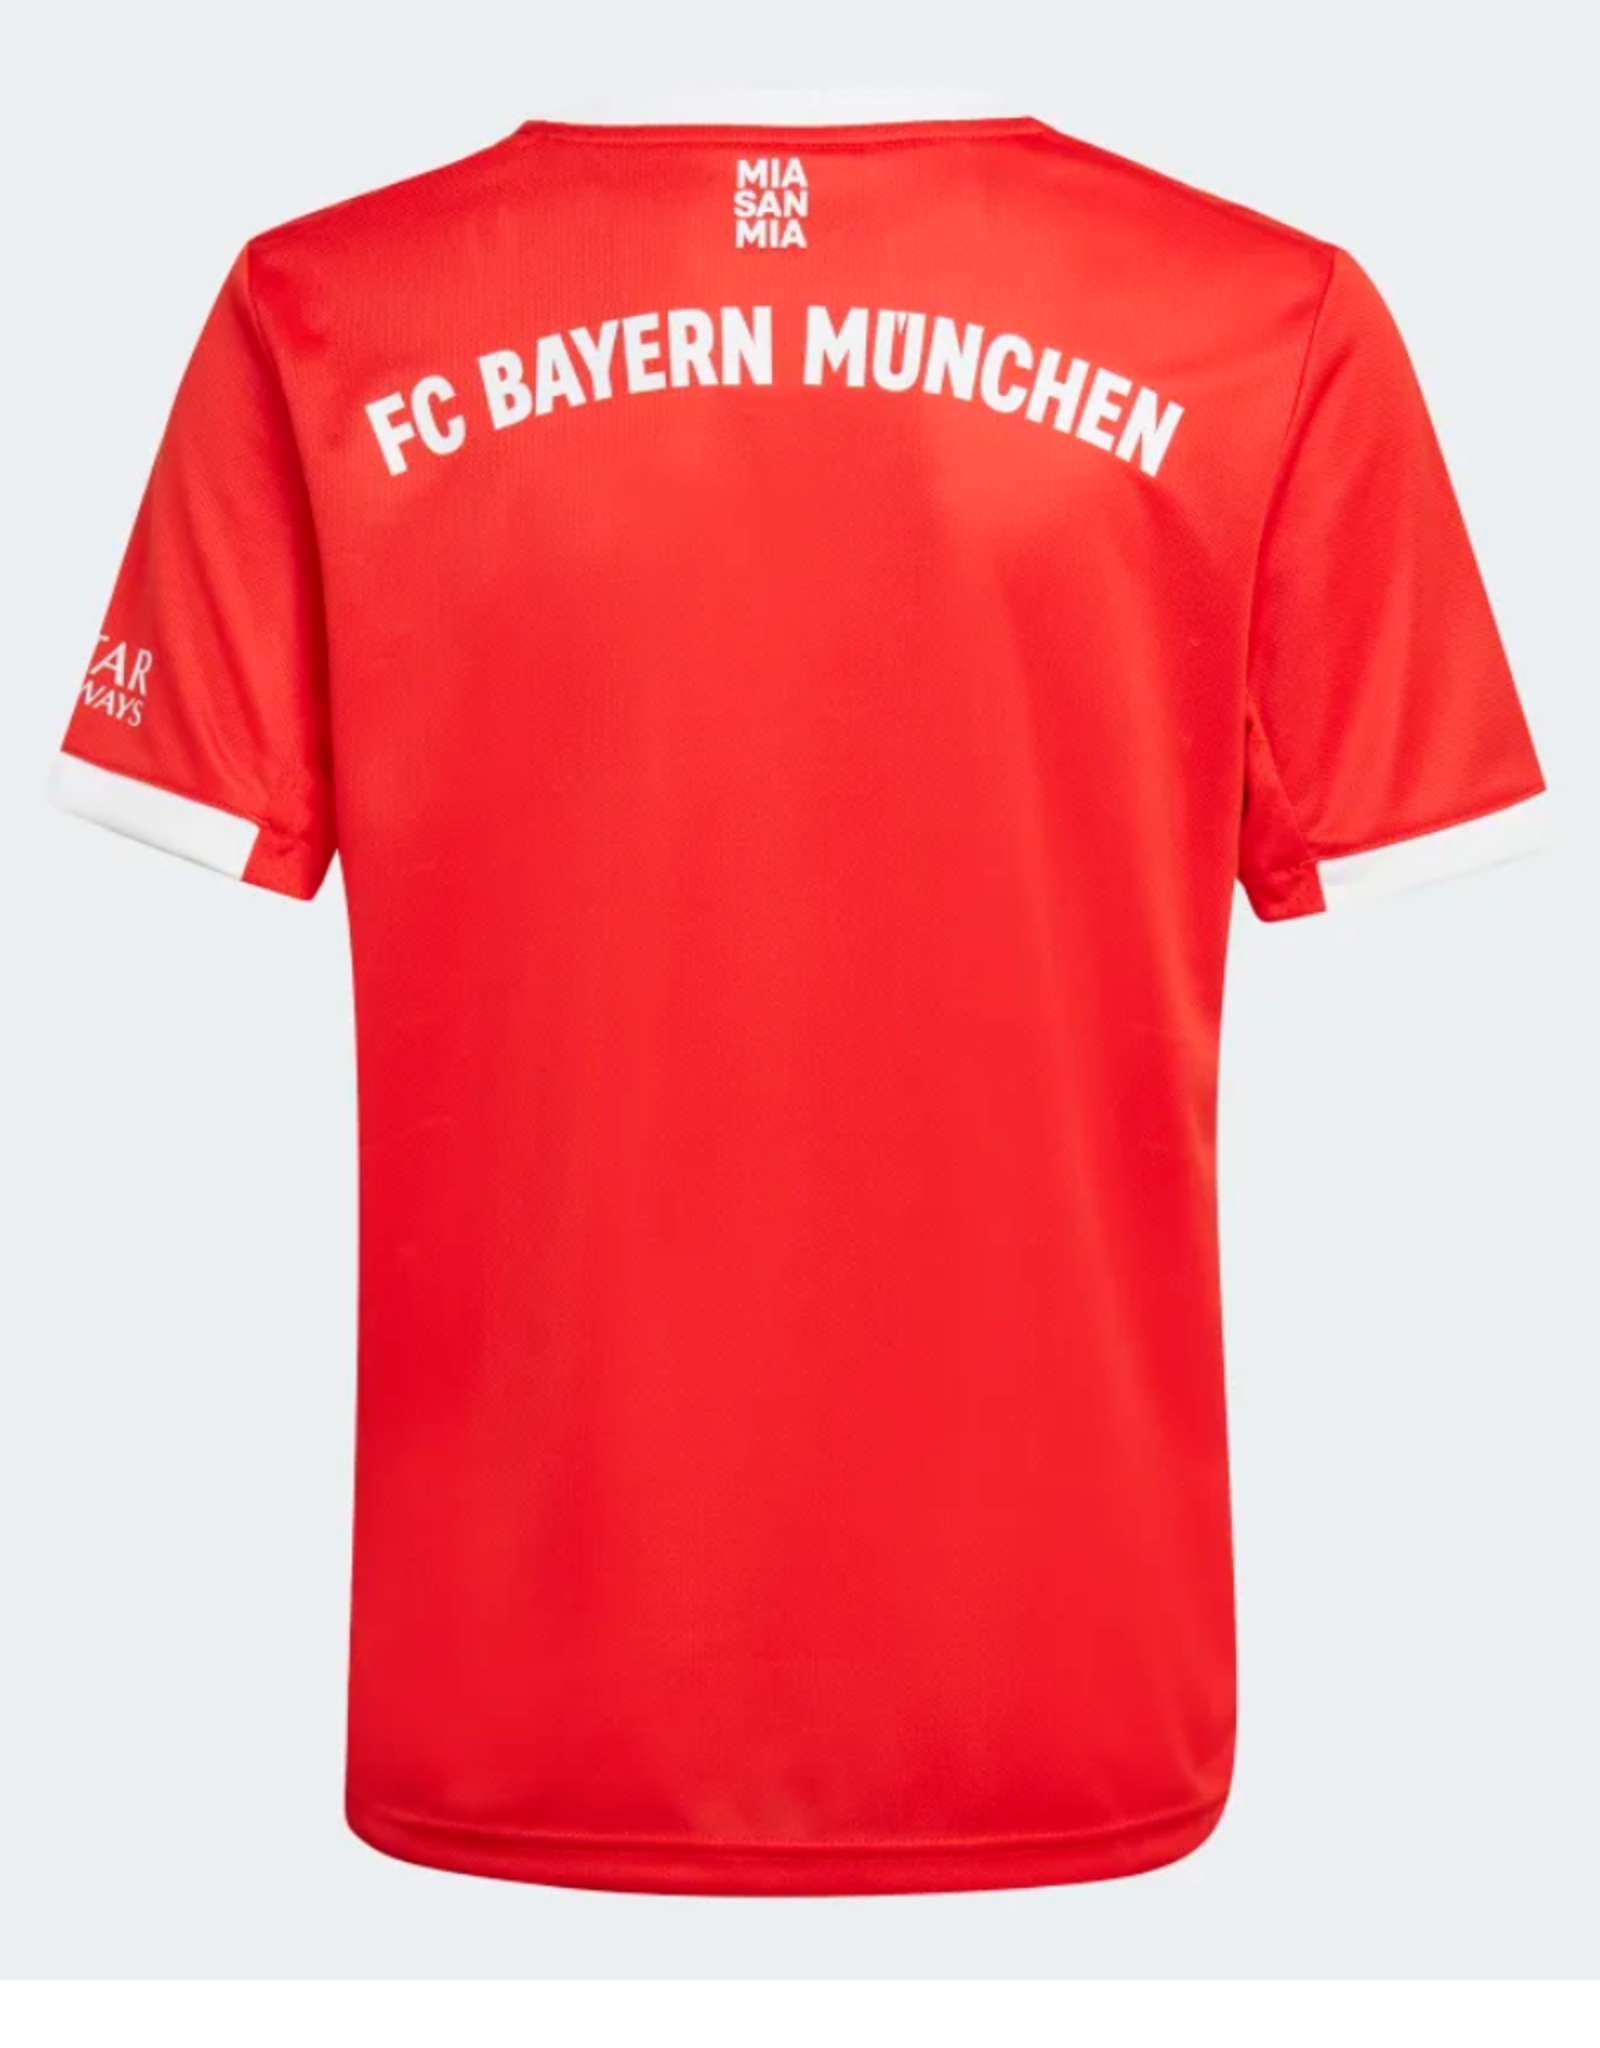 Adidas Adidas 22 Soccer Jersey Bayern Munich Red